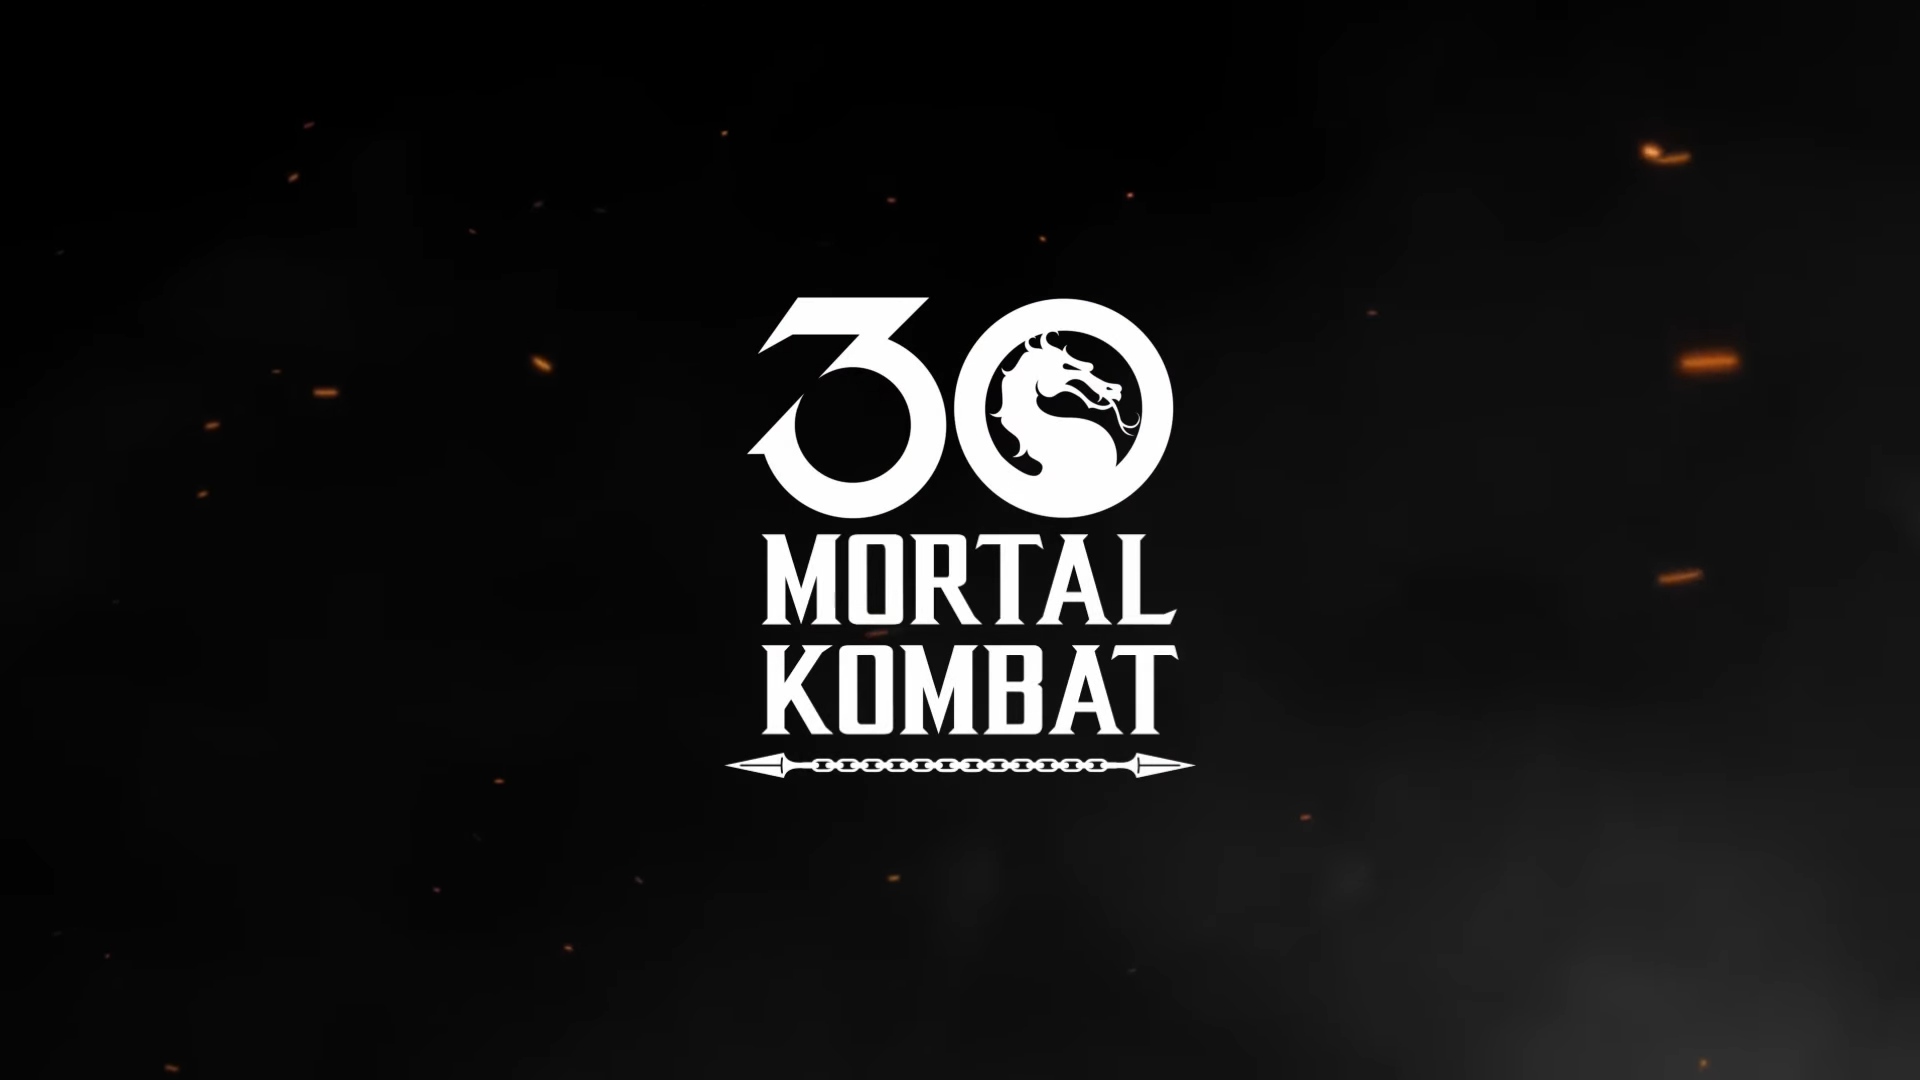 Создатели Mortal Kombat поздравили фанатов с 30-летием франшизы в новом ролике